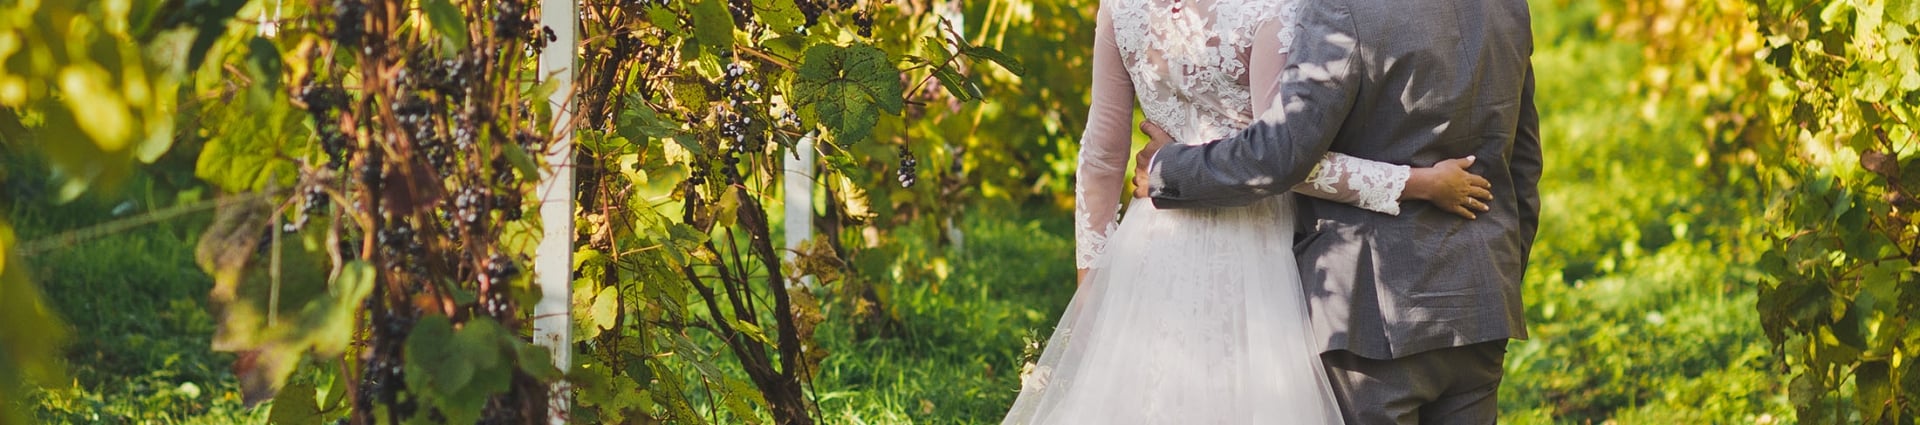 Beautiful young couple walks among the vineyards.